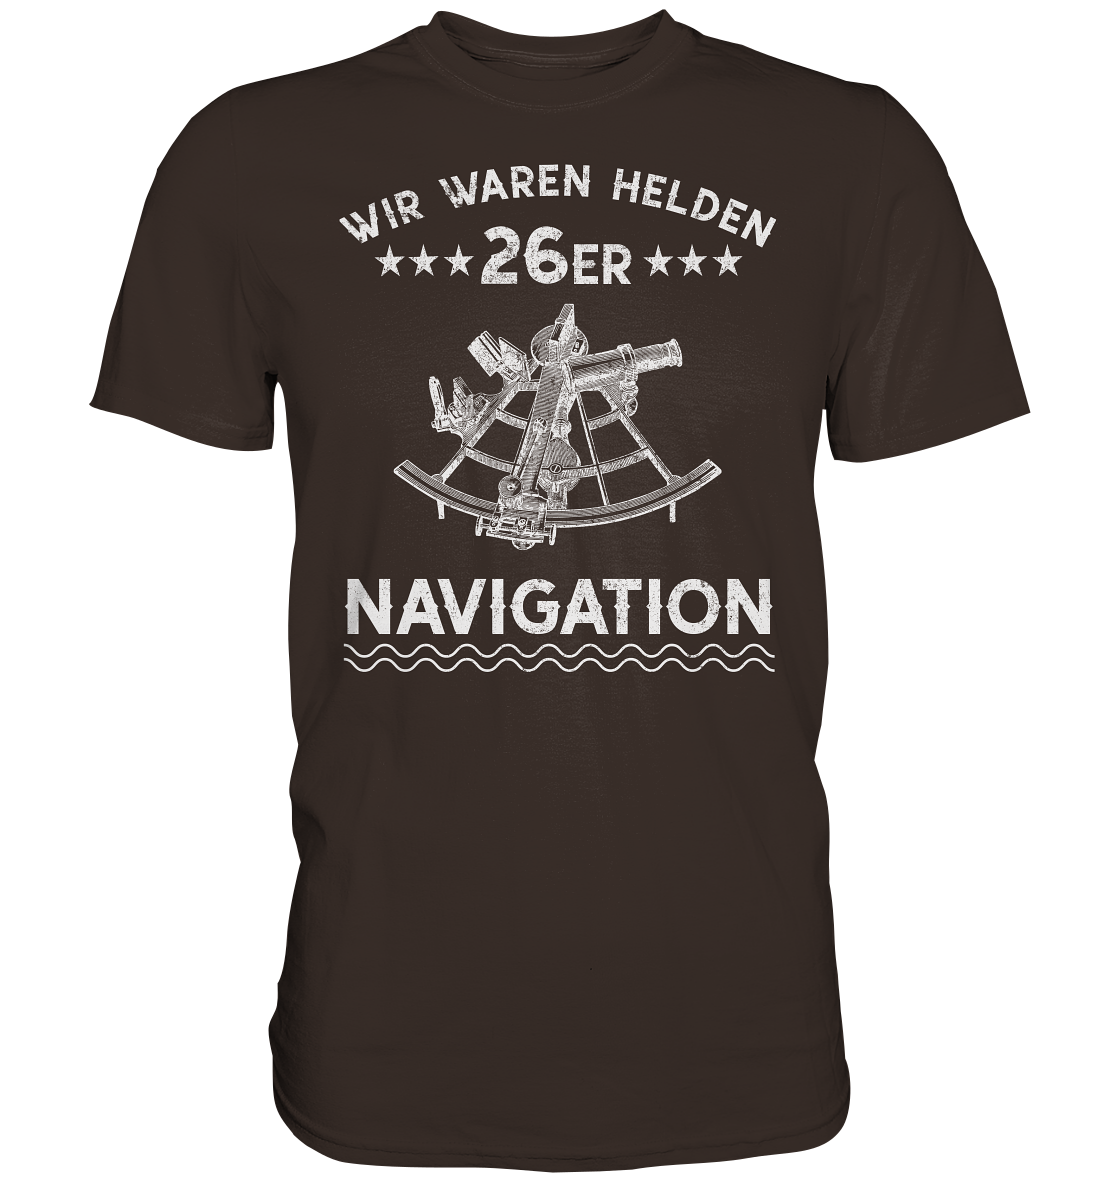 NAVIGATION - Wir waren Helden - Premium Shirt